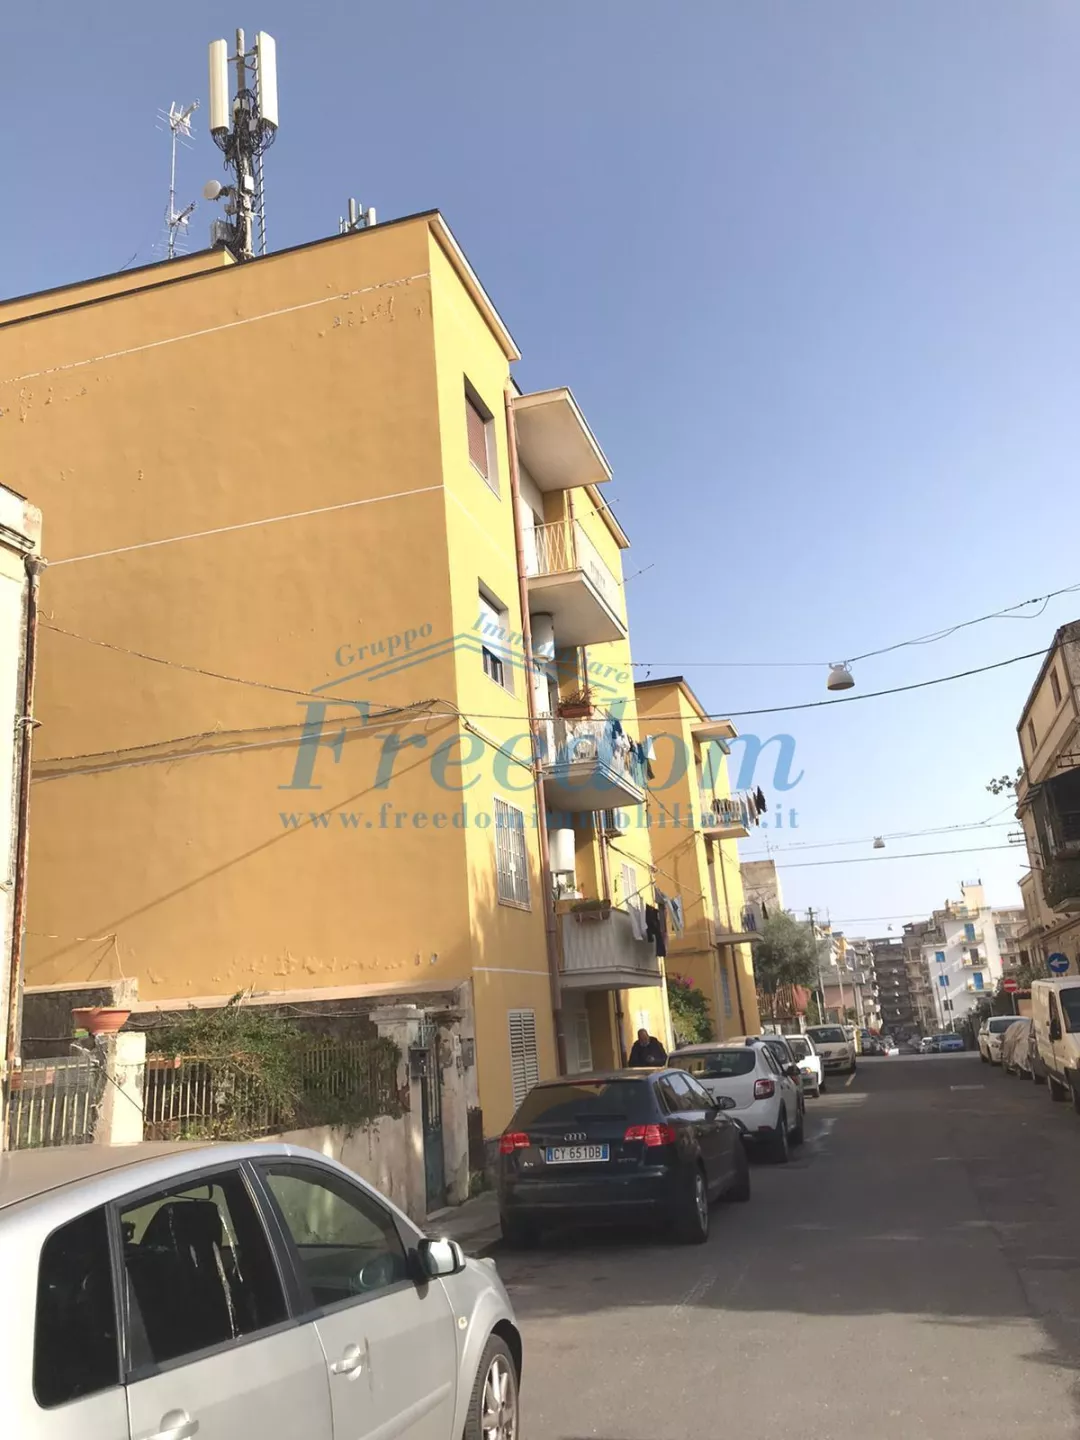 Immagine per Bilolocale in vendita a Catania via Randazzo 64